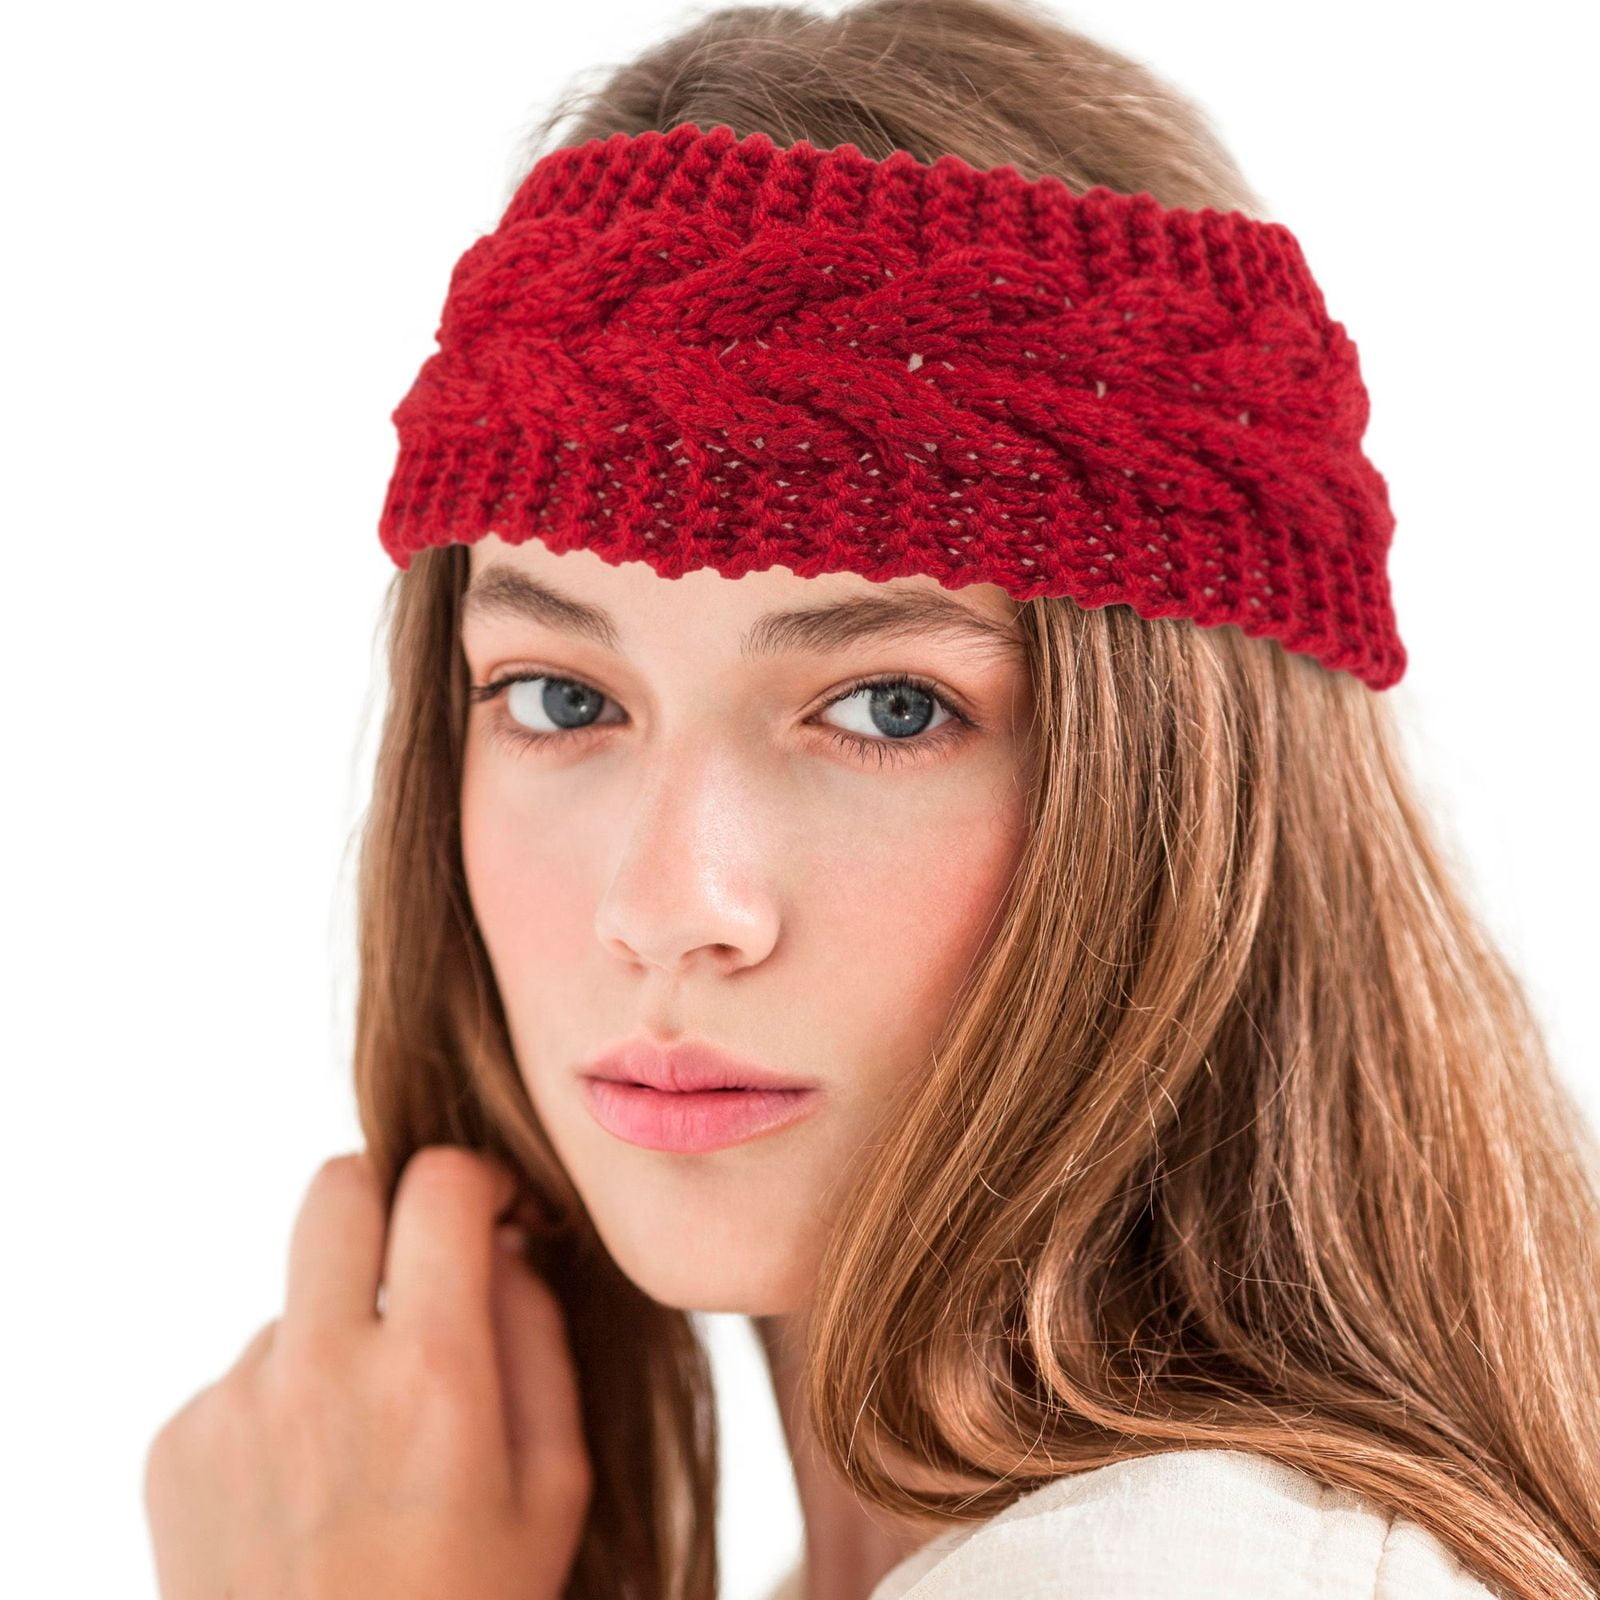 Headband Handmade gift ideas Crochet Ear Warmer Wool Winter wear Headwrap